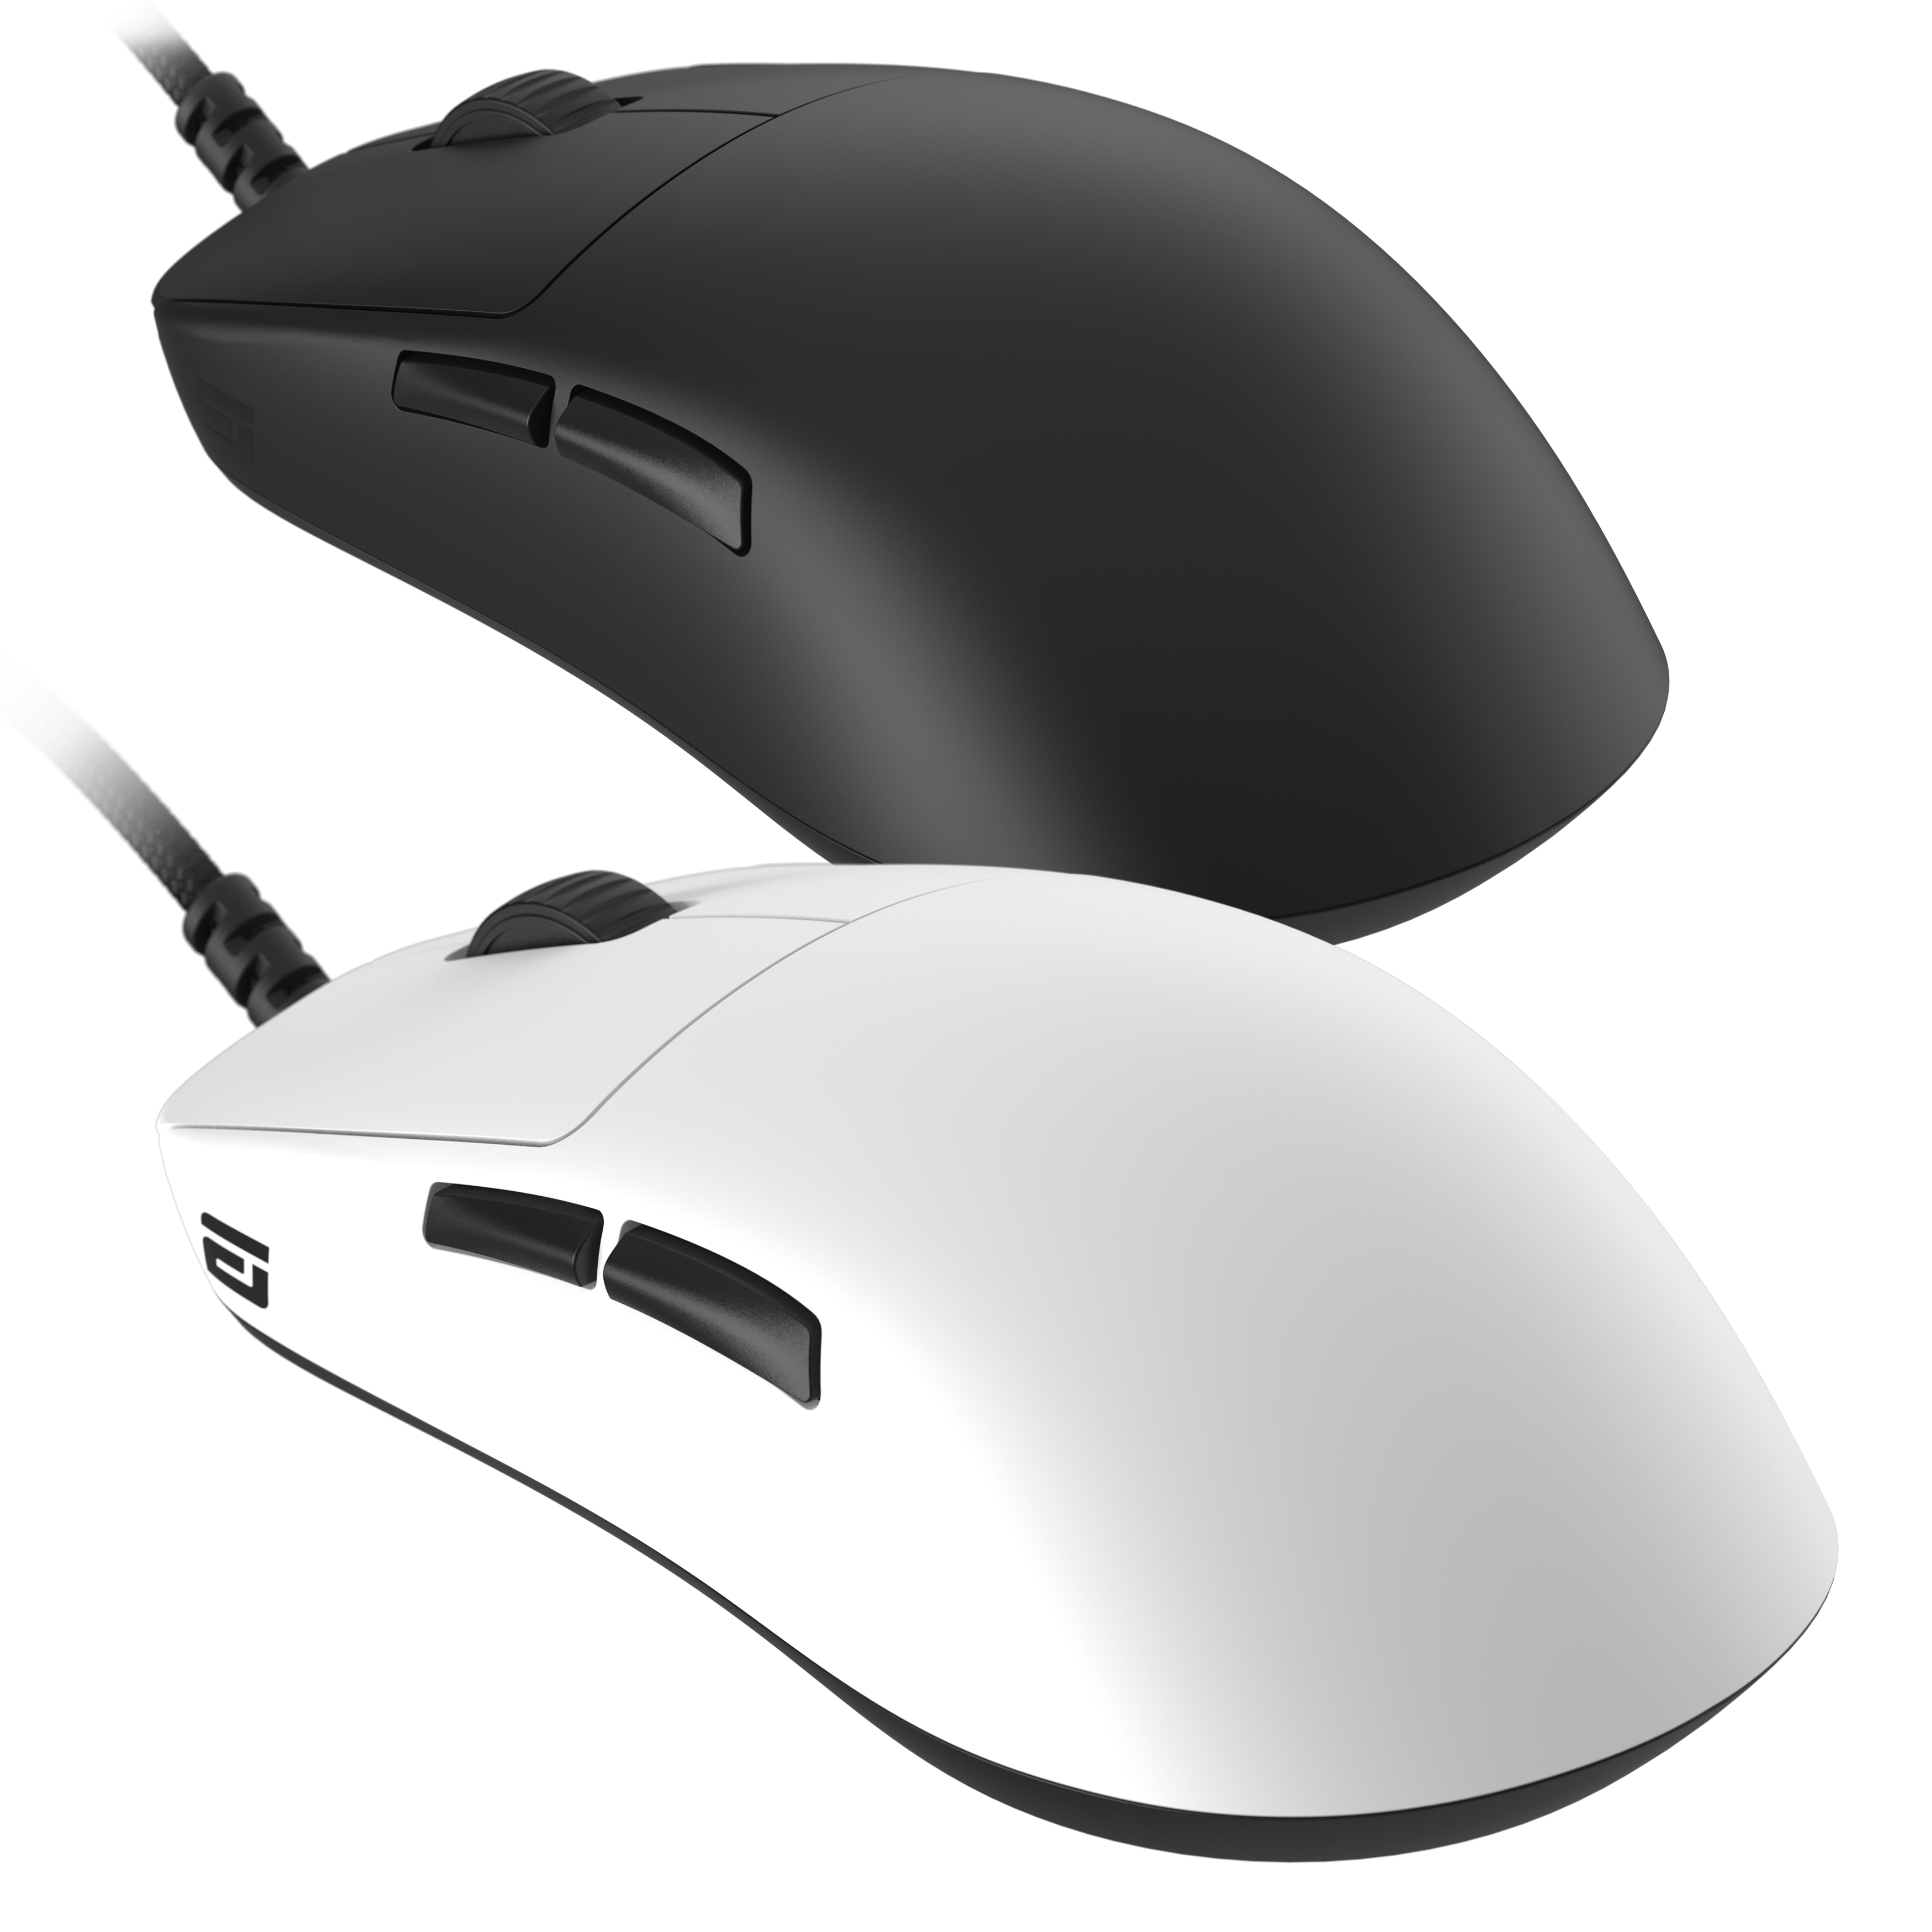 Endgame Gear Gaming Mouse OP1 em Preto ou Branco